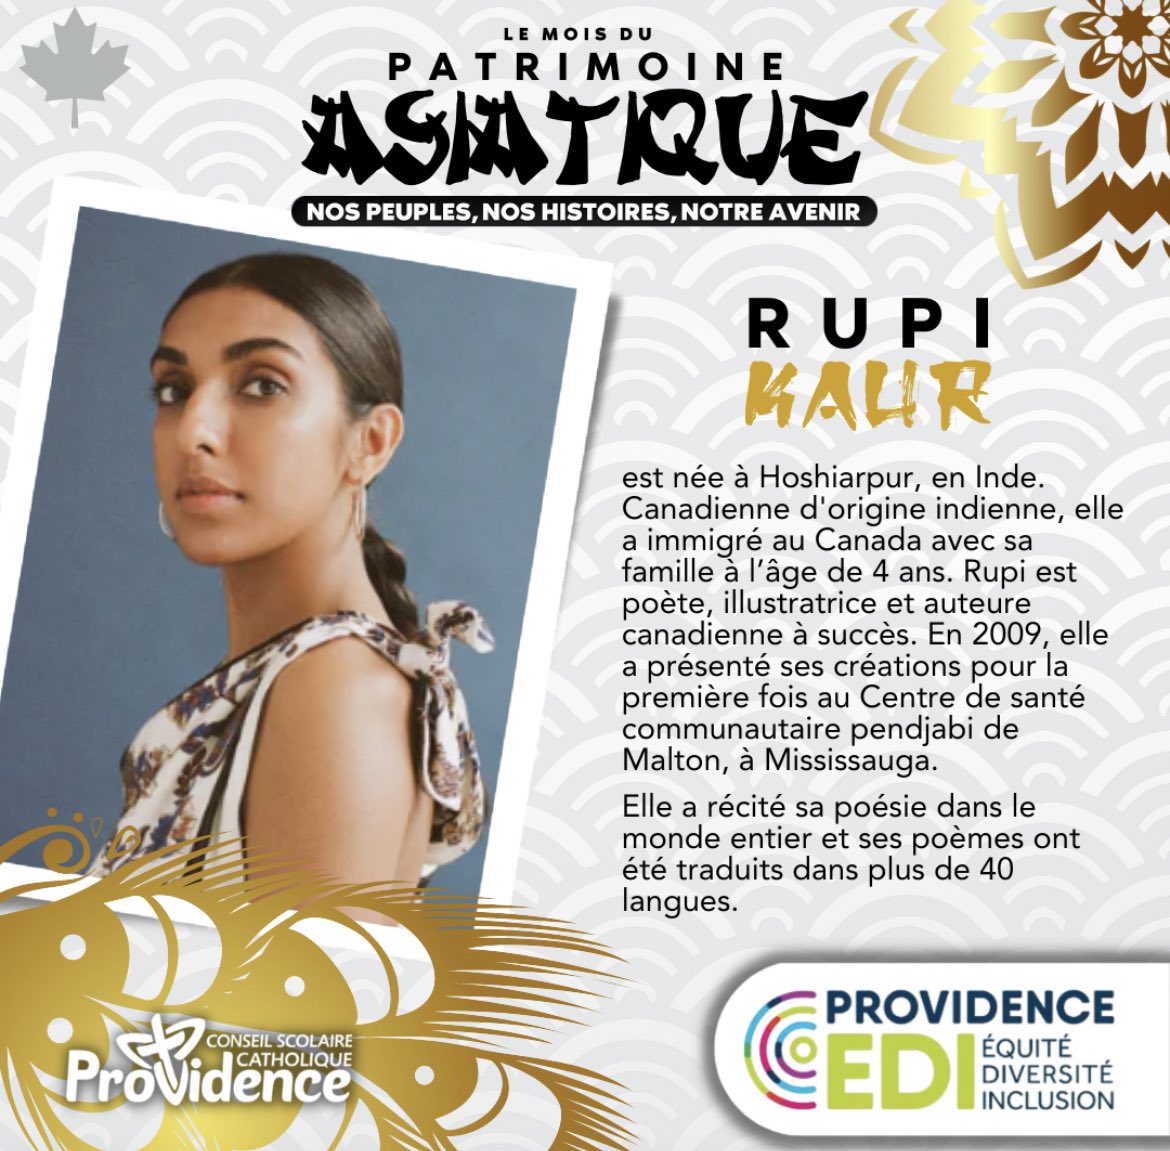 Célébrons Rupi Kaur et son impact en tant qu'écrivaine et poétesse asiatique pendant le mois du patrimoine asiatique. Ses mots puissants résonnent dans le cœur de nombreuses personnes, en mettant en avant l'expérience des femmes asiatiques. 💫✨ #MoisDuPatrimoineAsiatique